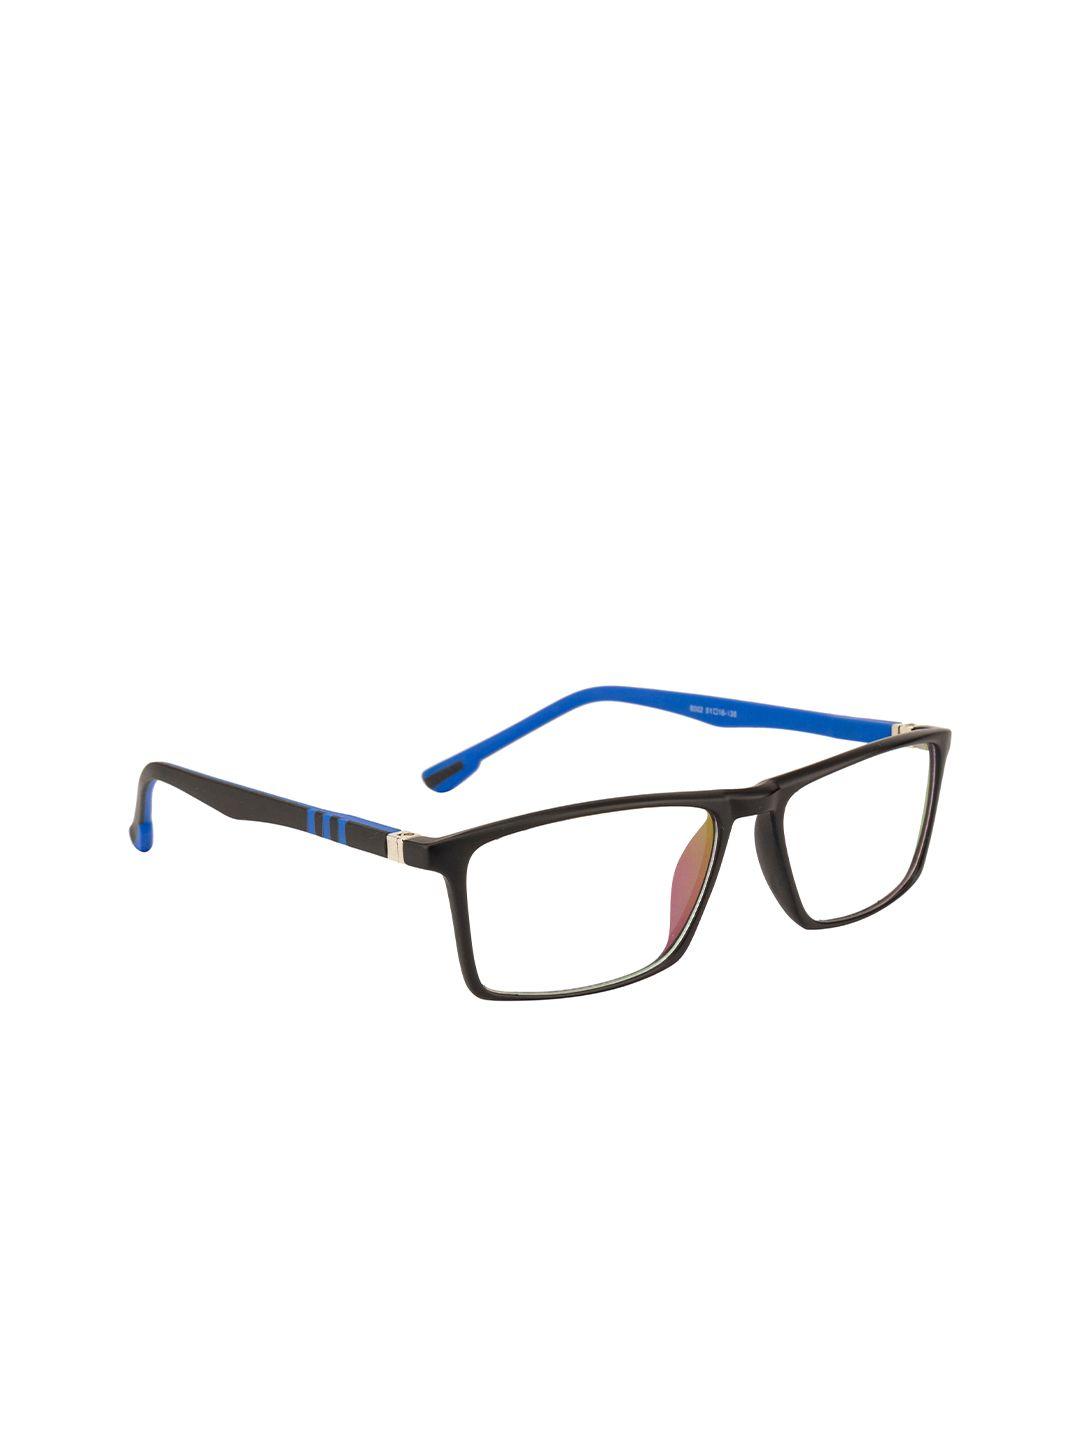 gold berg unisex black & blue full rim rectangle frames eyeglasses